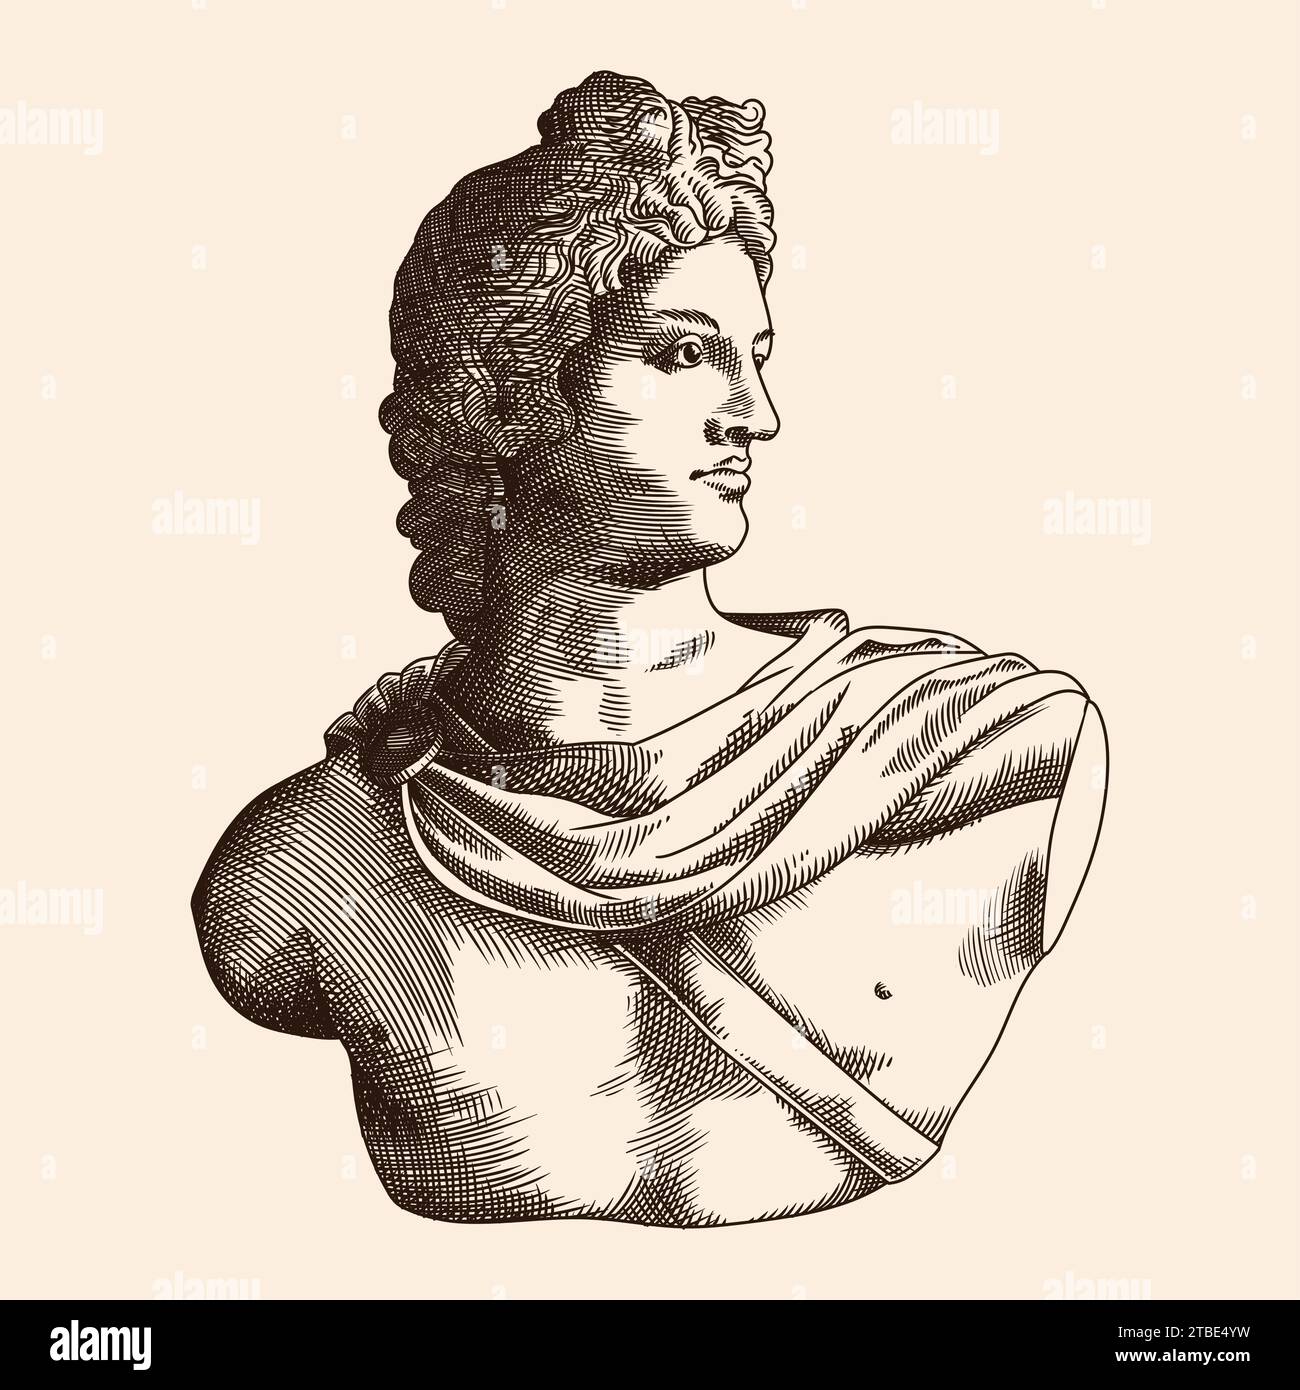 Busto dell'antico dio greco e romano Apollo. Illustrazione vettoriale in stile incisione. Illustrazione Vettoriale